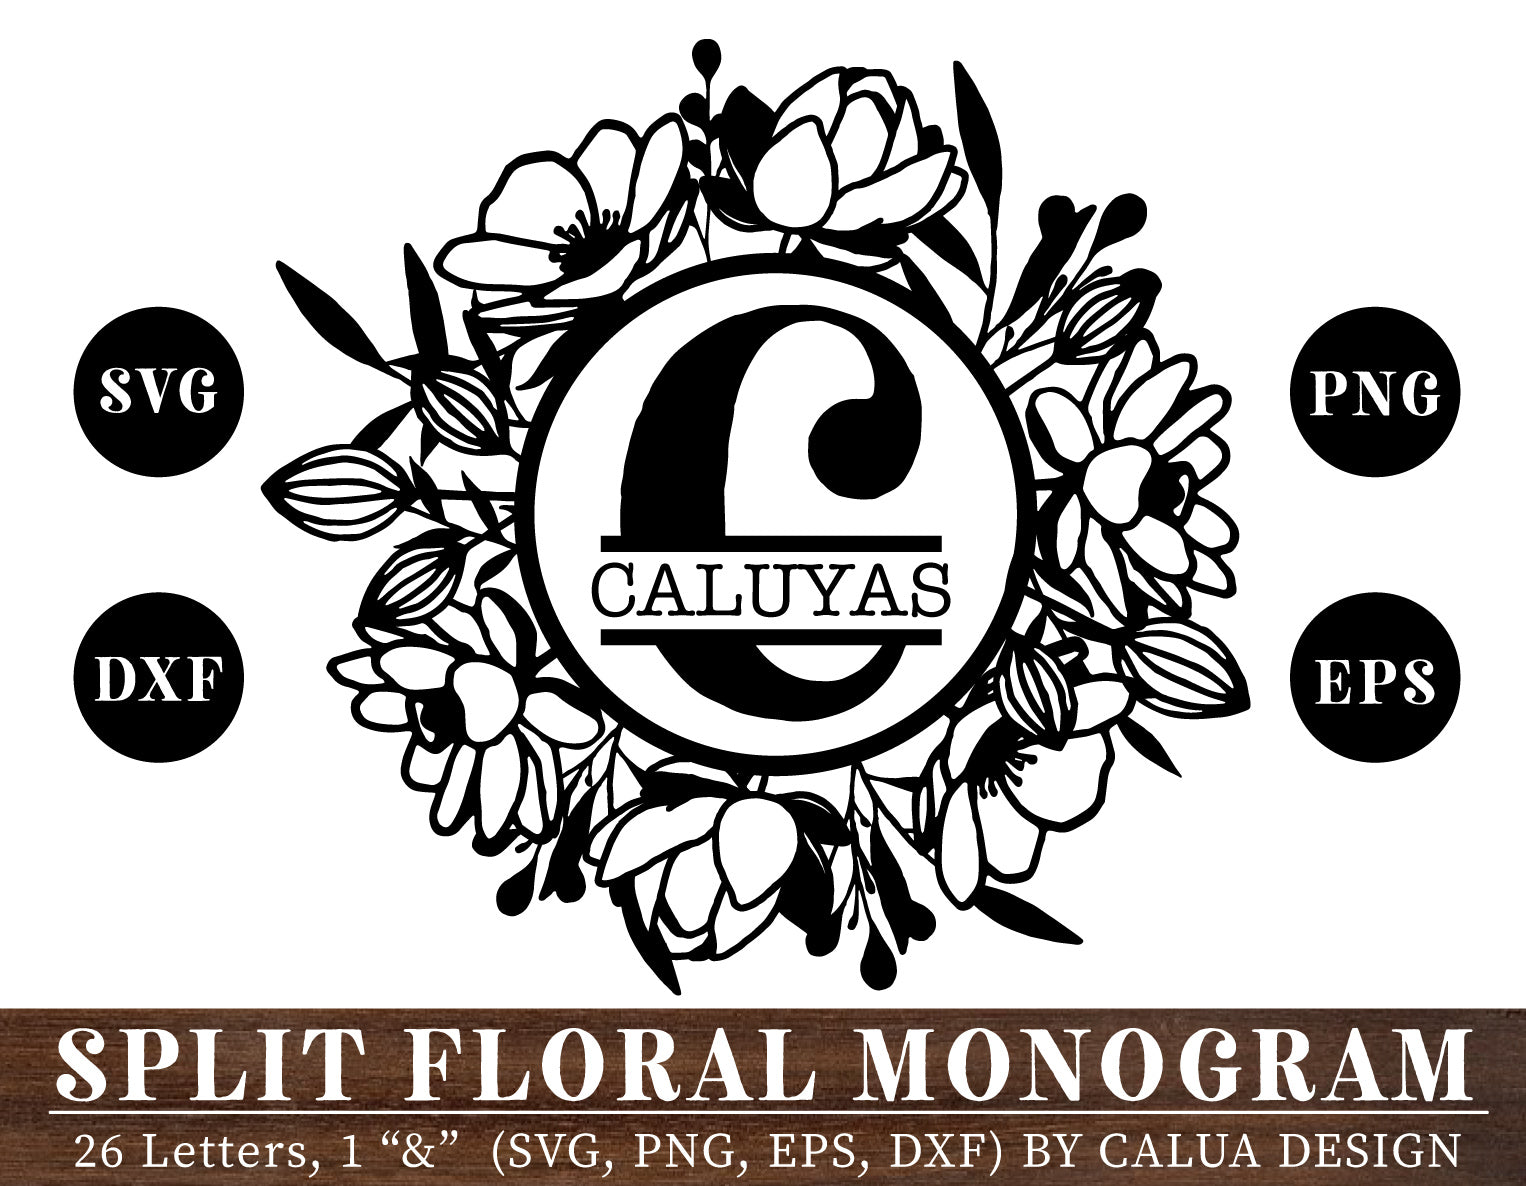 Flower Split Monogram Letter M SVG